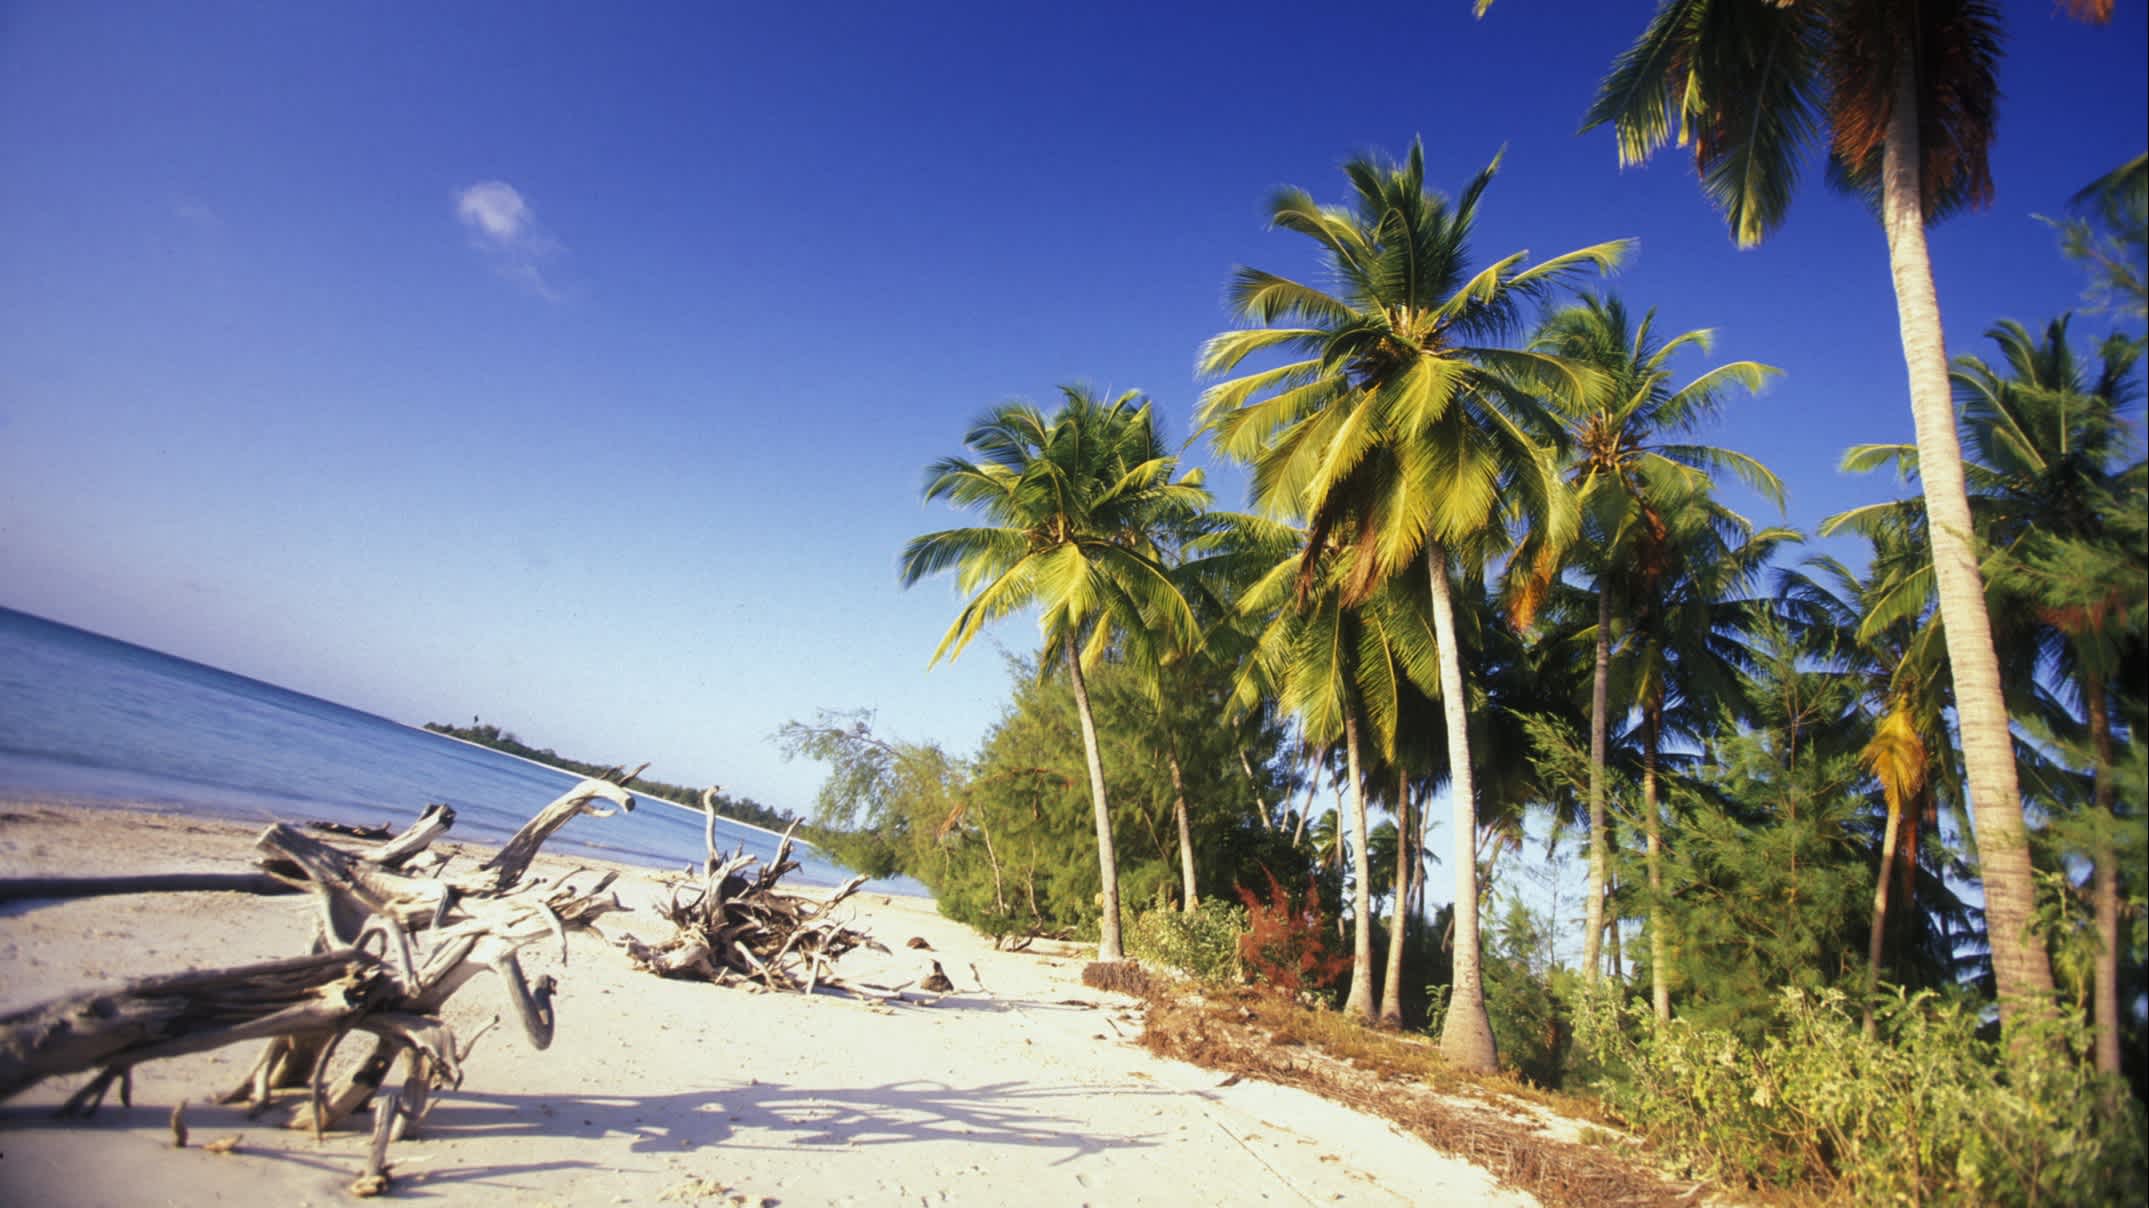 La plage de rêve de Michamvi, dans la baie de Chwaka, sur la côte est de l'île de Zanzibar, qui fait partie de la Tanzanie.

